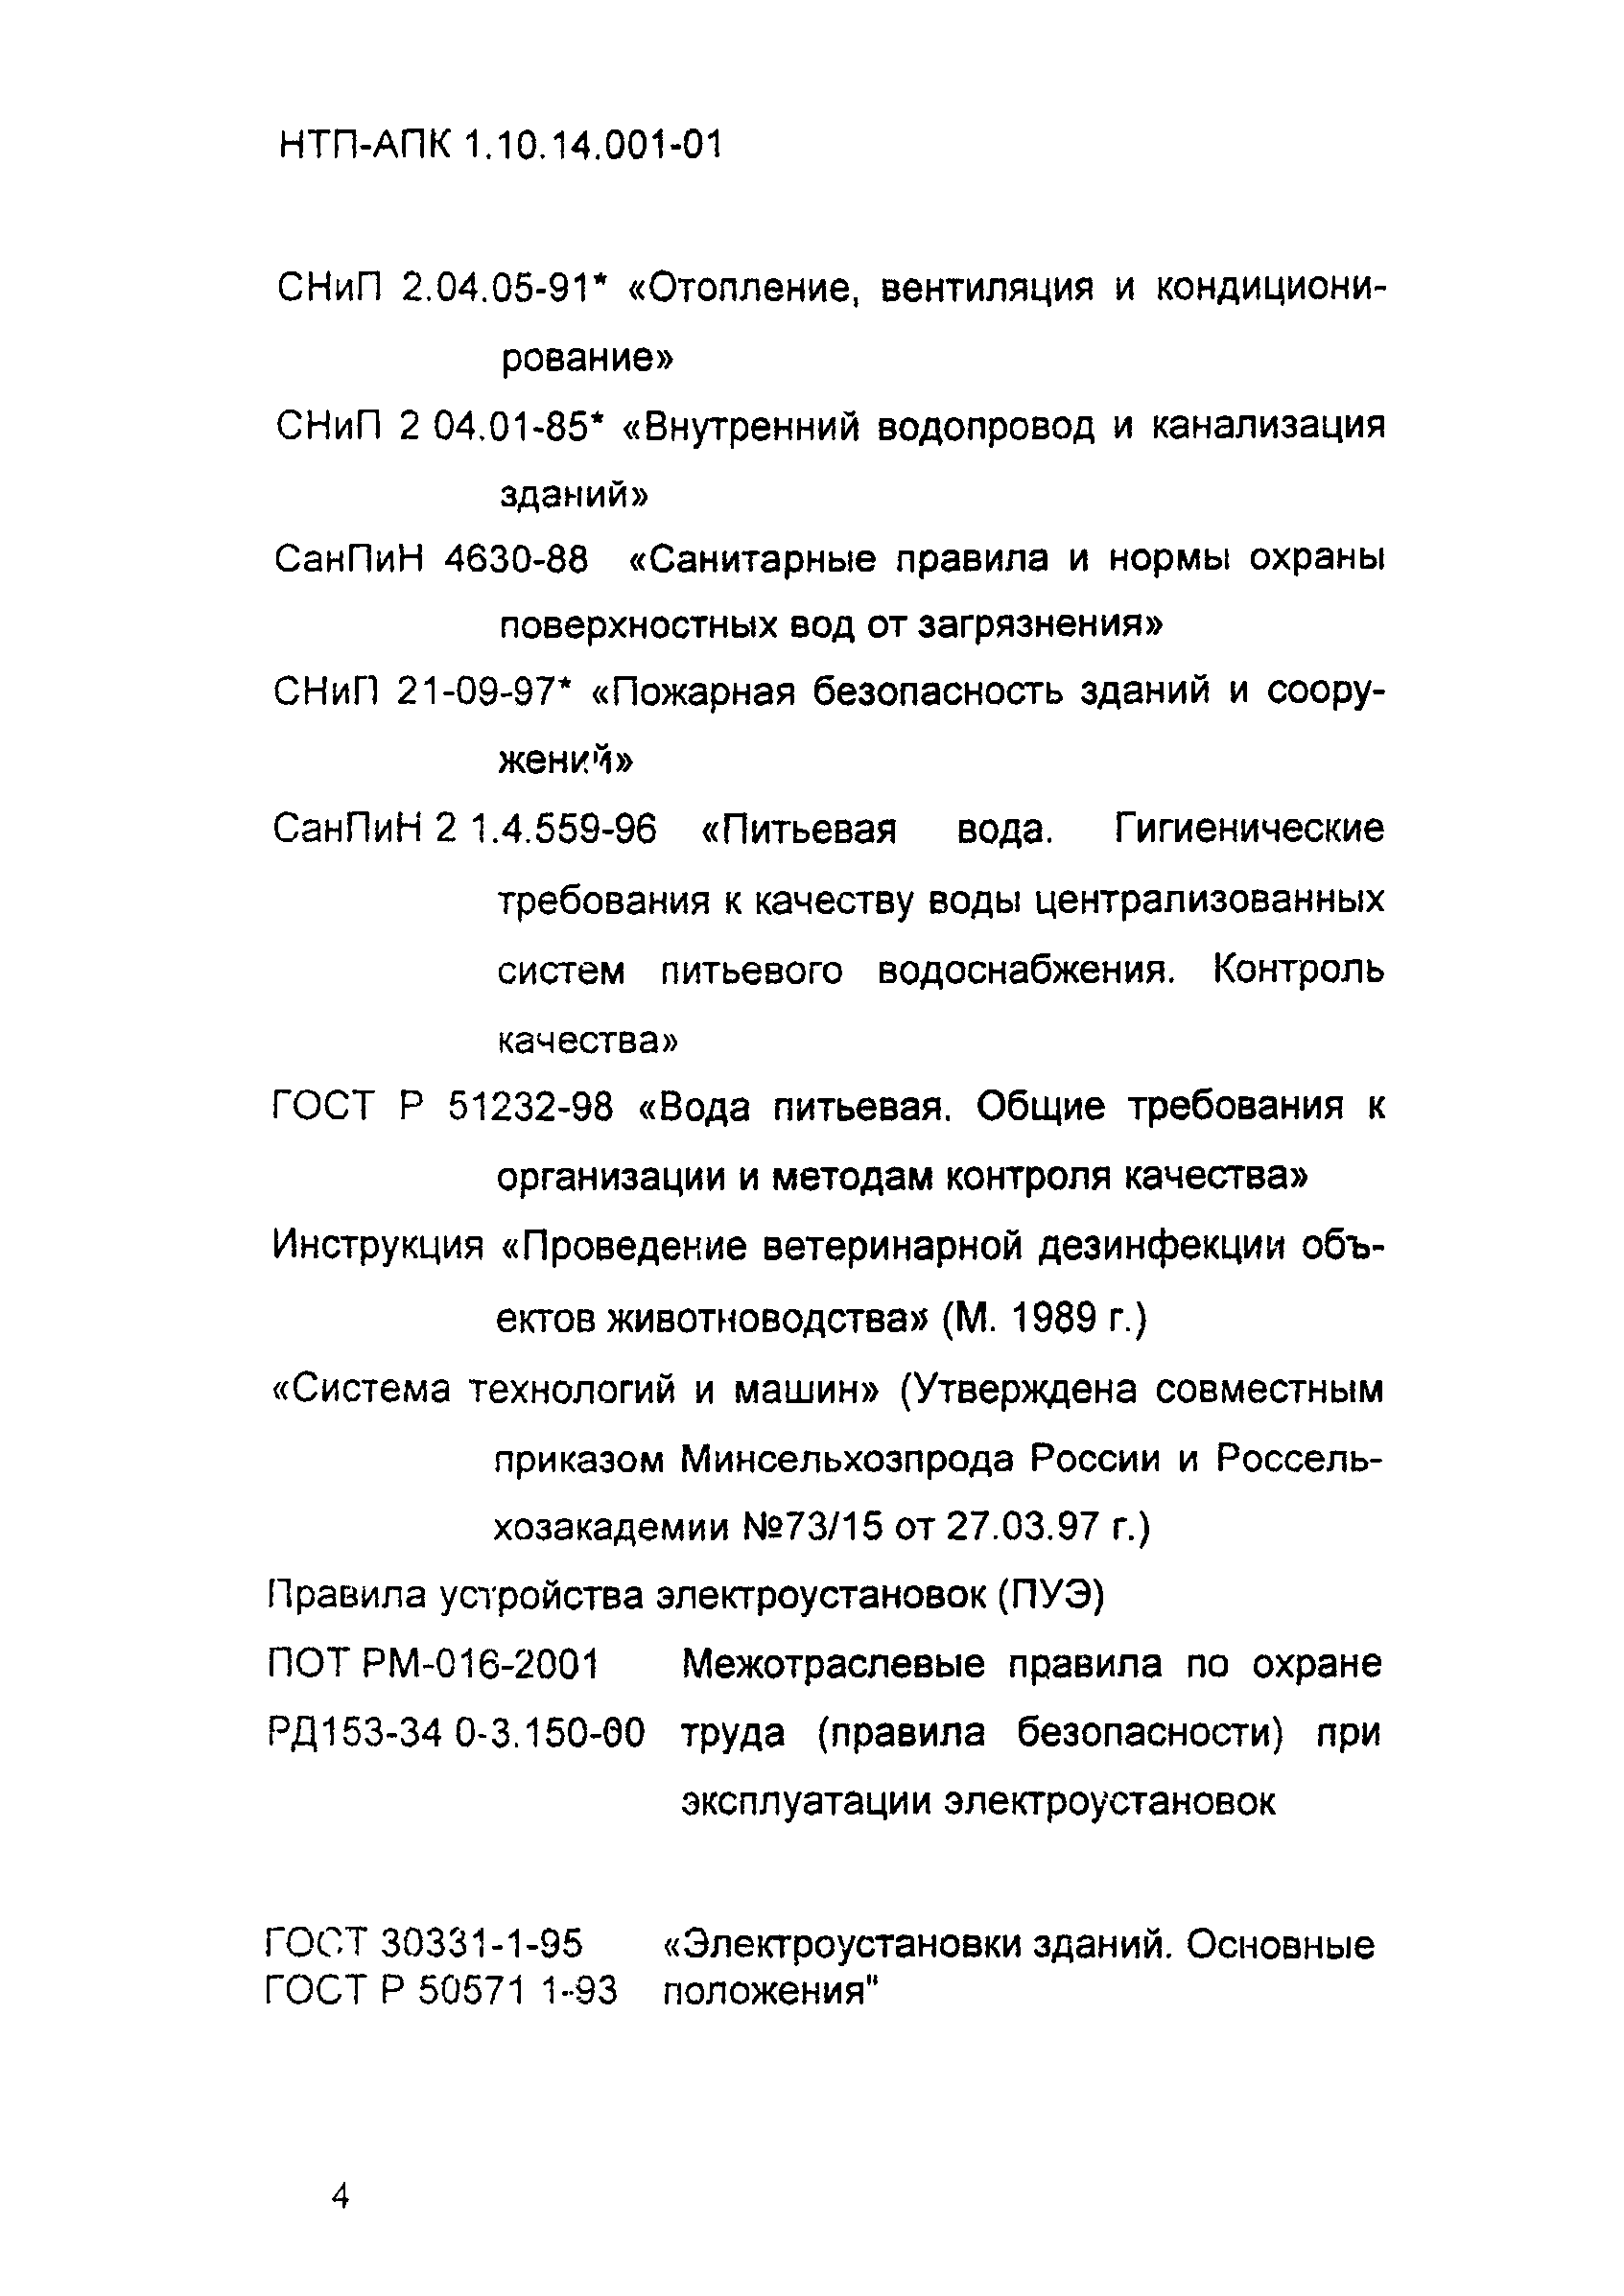 НТП АПК 1.10.14.001-01